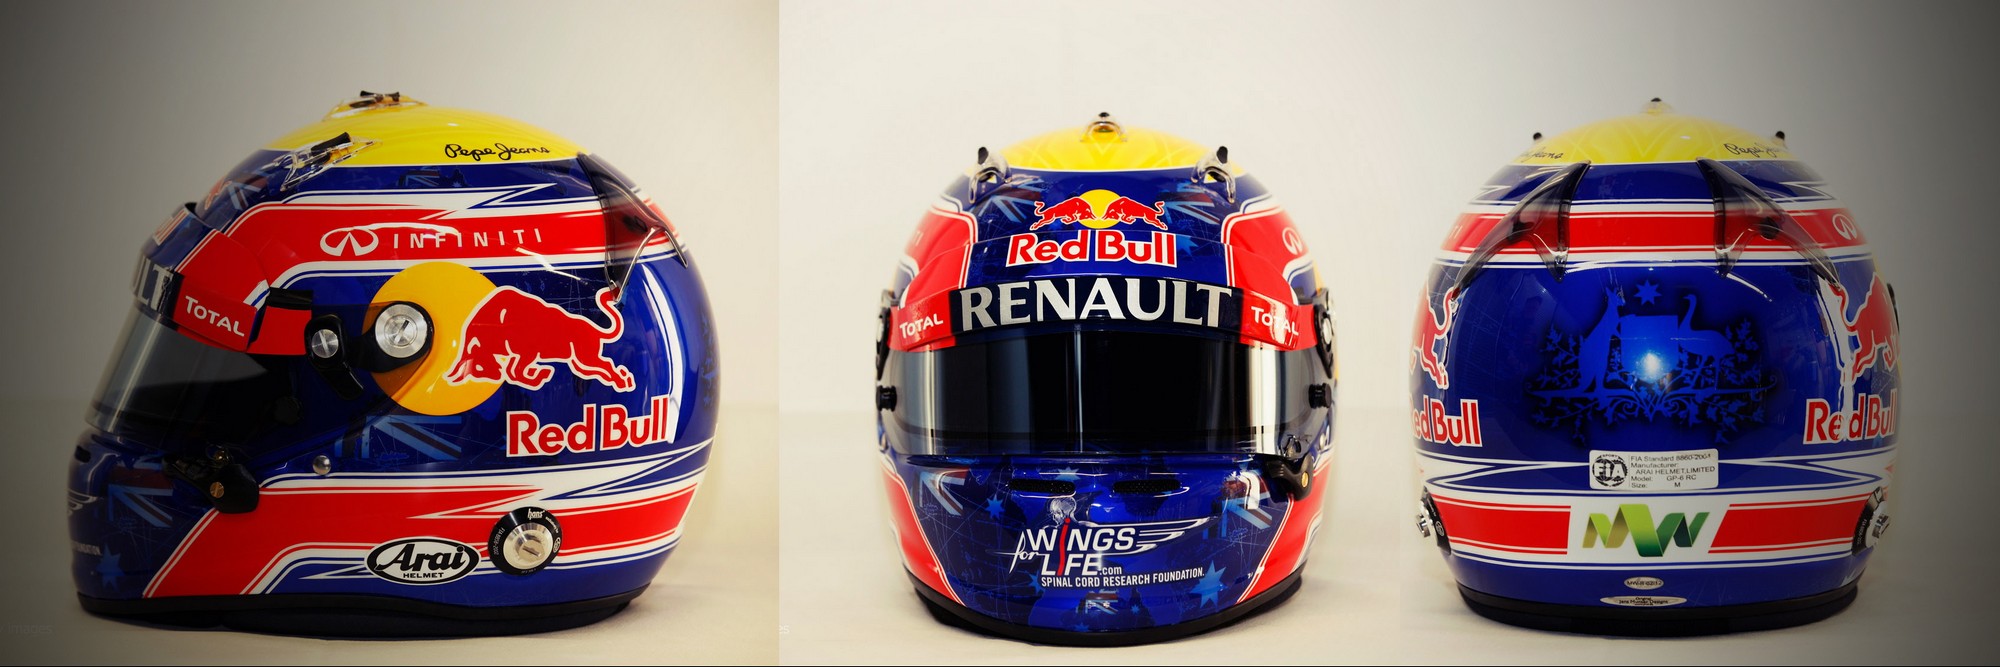 Шлем Марка Уэббера на сезон 2012 года | 2012 helmet of Mark Webber